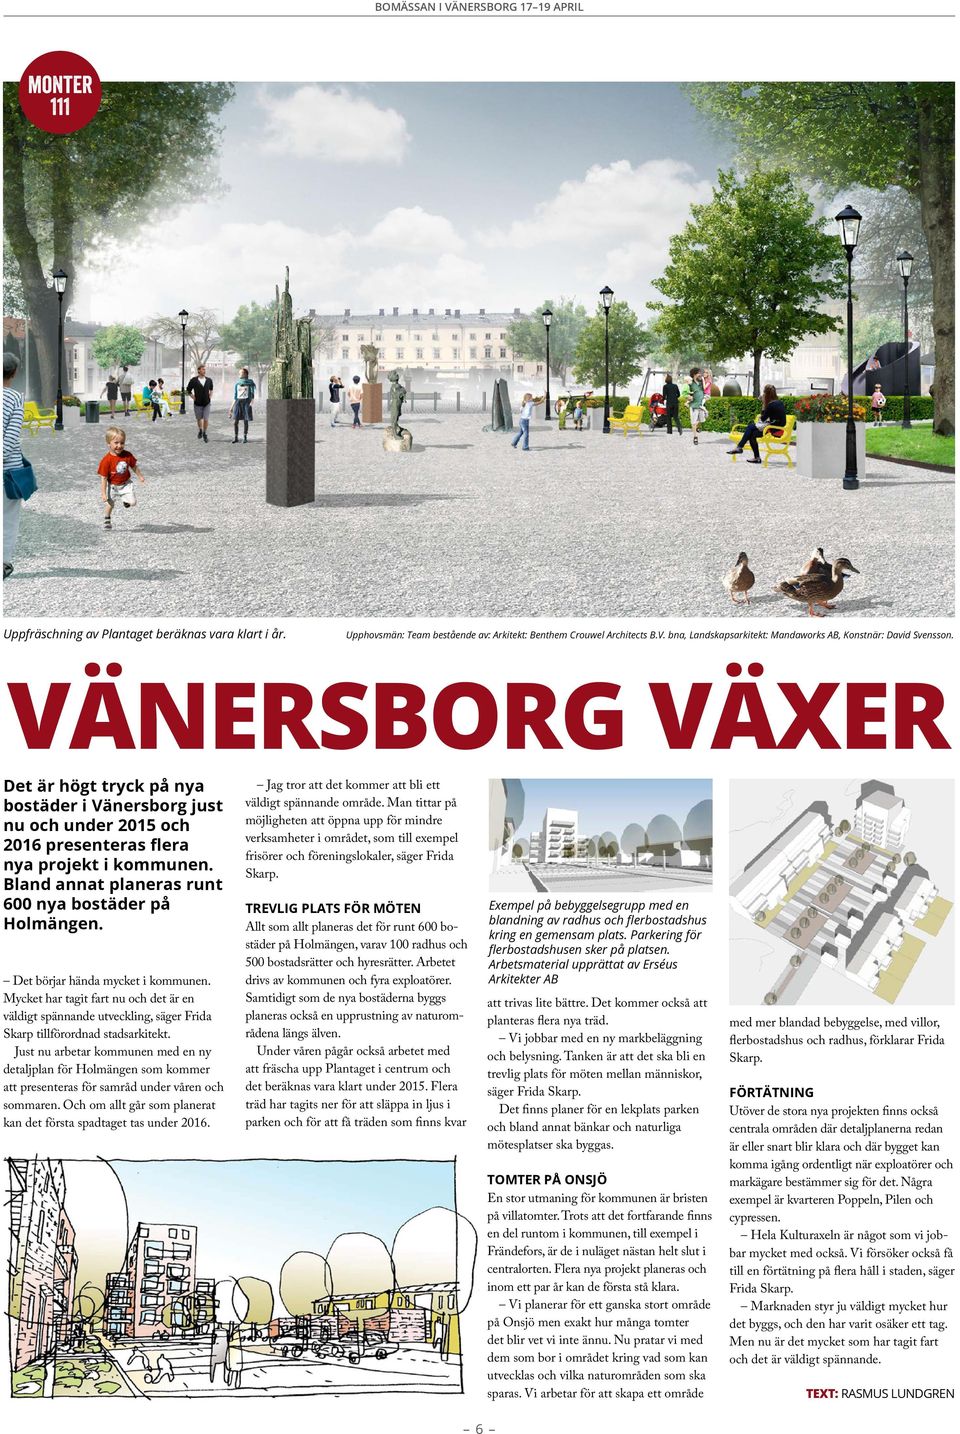 vänersborg växer Det är högt tryck på nya bostäder i Vänersborg just nu och under 2015 och 2016 presenteras flera nya projekt i kommunen. Bland annat planeras runt 600 nya bostäder på Holmängen.